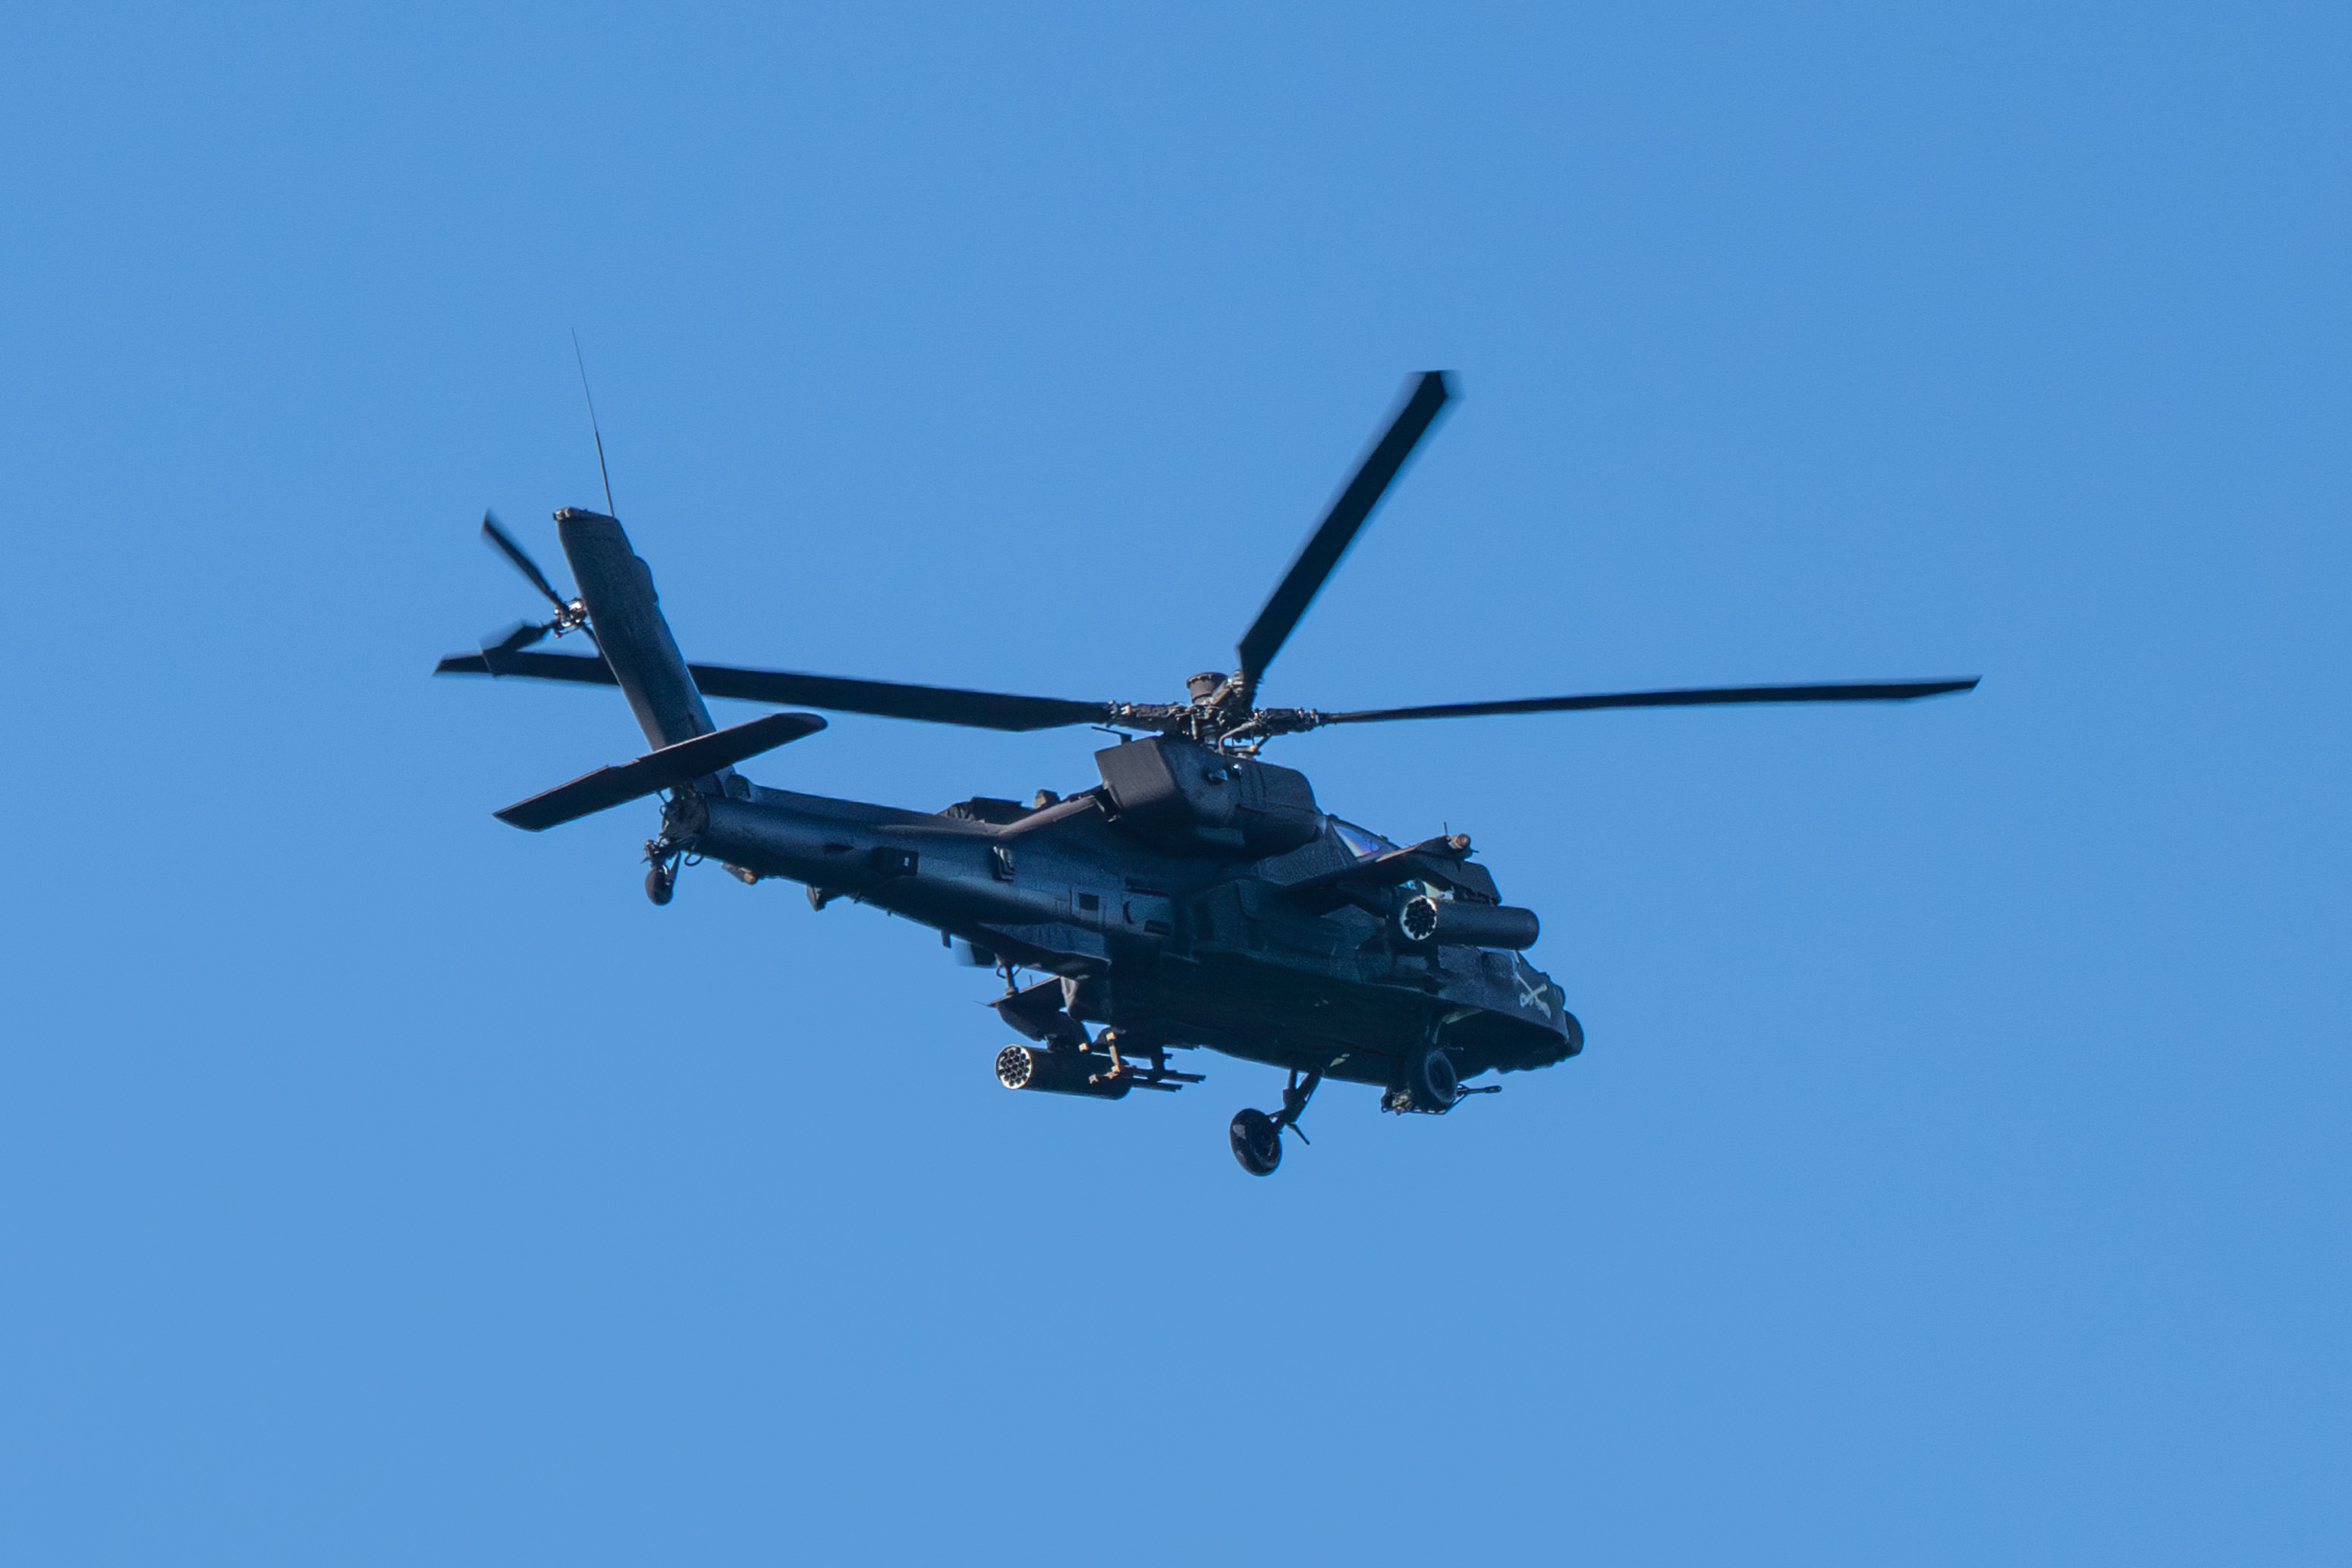 Le crash d’un hélicoptère Apache à Fort Riley fait 2 blessés : tout ce que nous savons